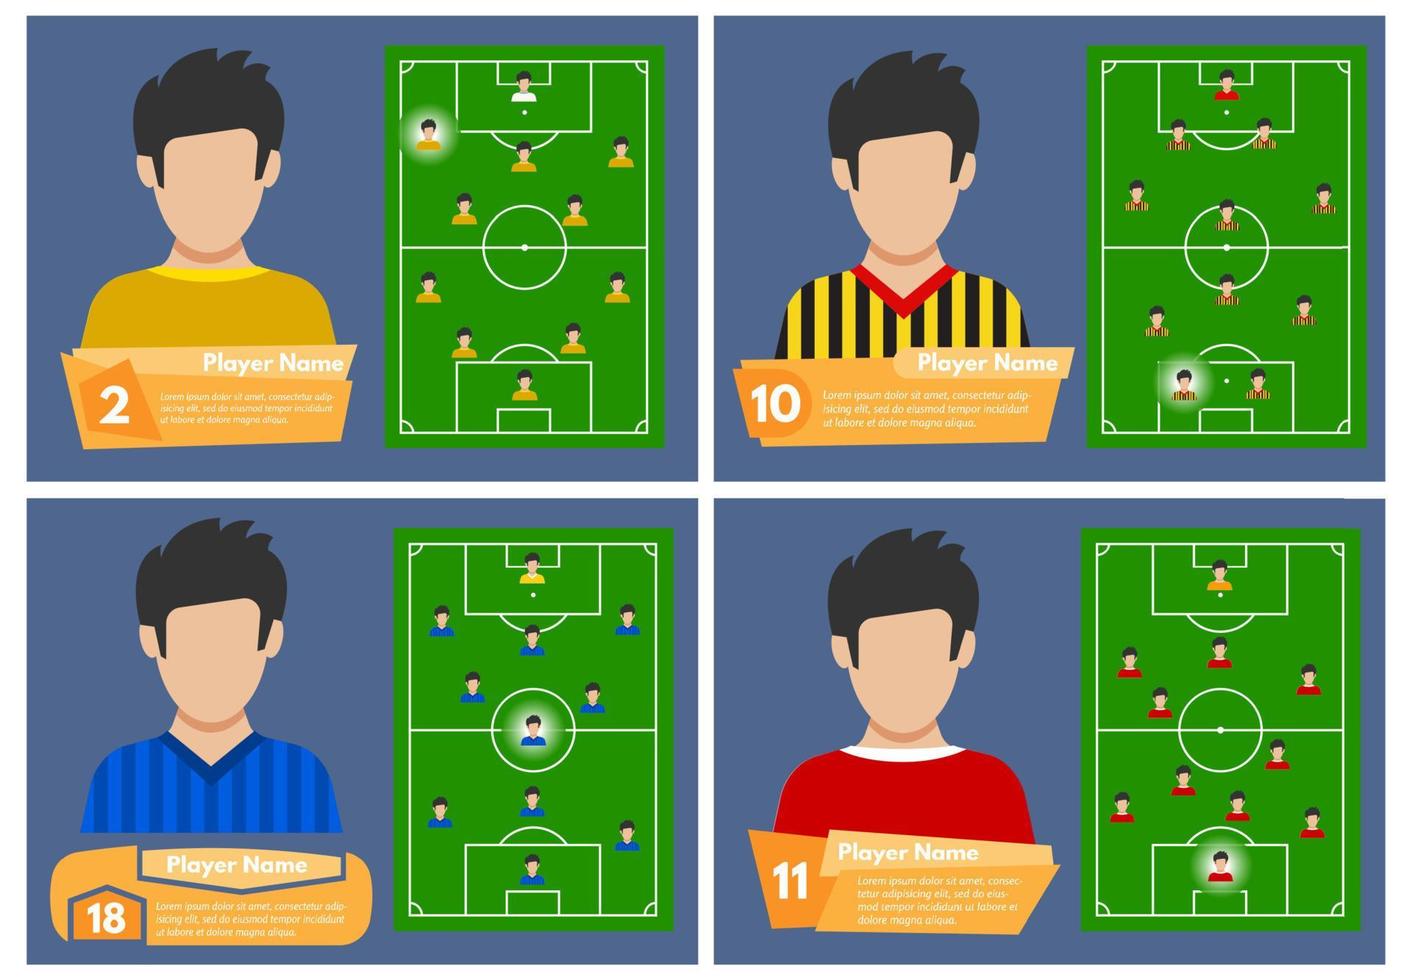 reeks van vier Amerikaans voetbal spelers met een positie Aan de veld- waar ze Speel. voetbal veld- voor spelen. vector illustratie